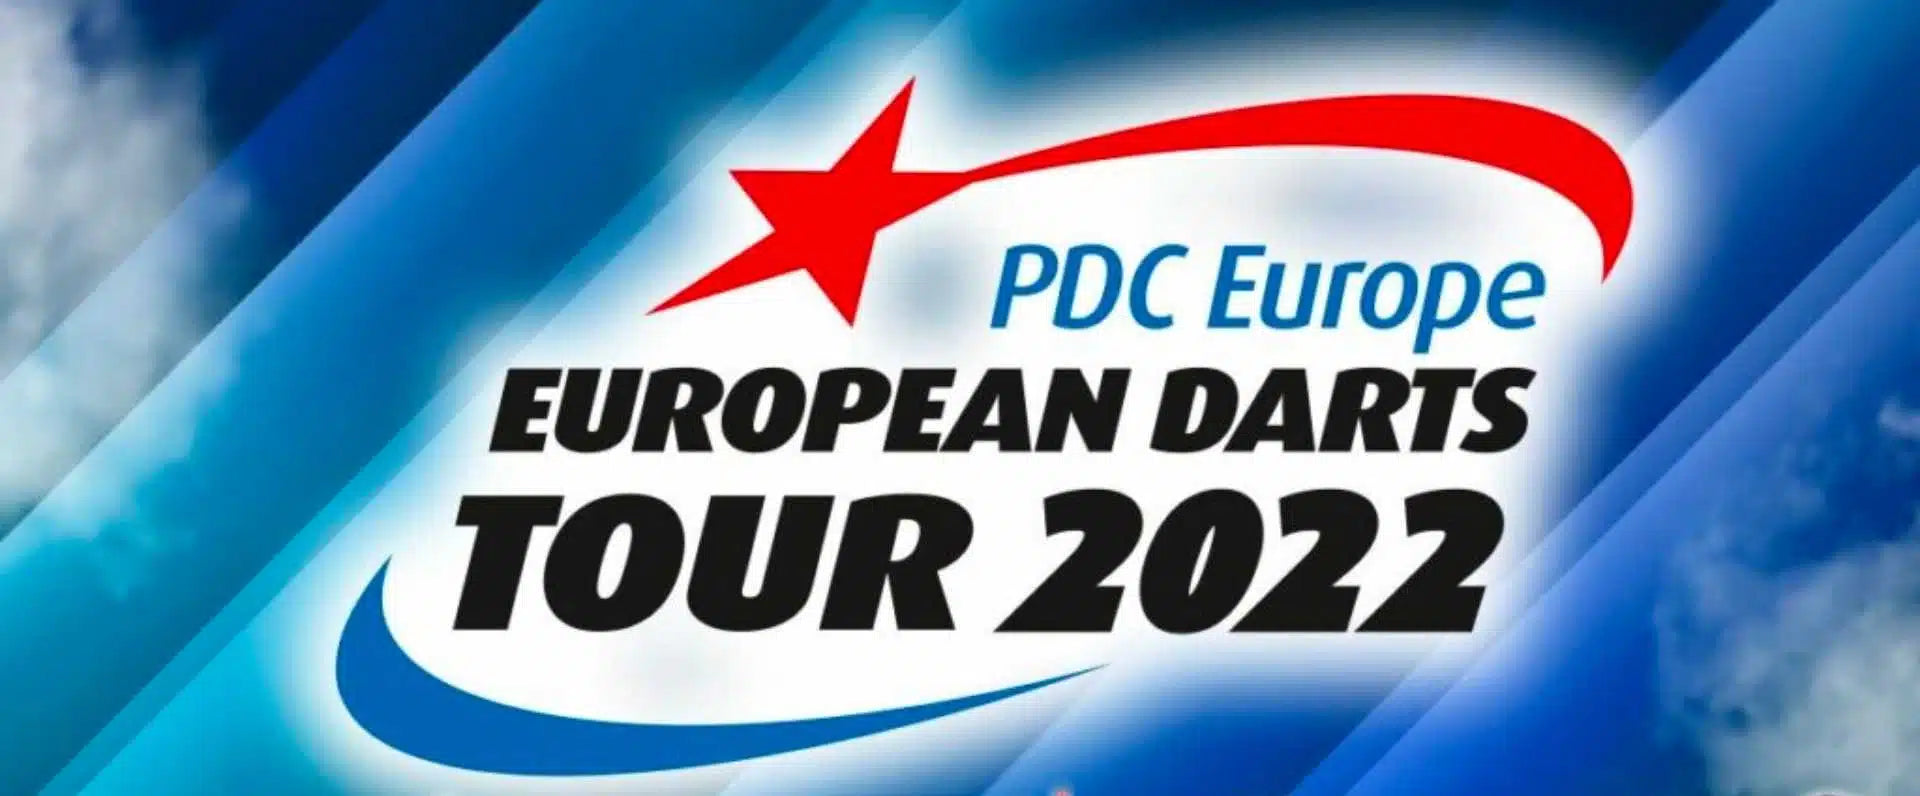 PDC Europe & European Darts Tour leicht und schnell erklärt